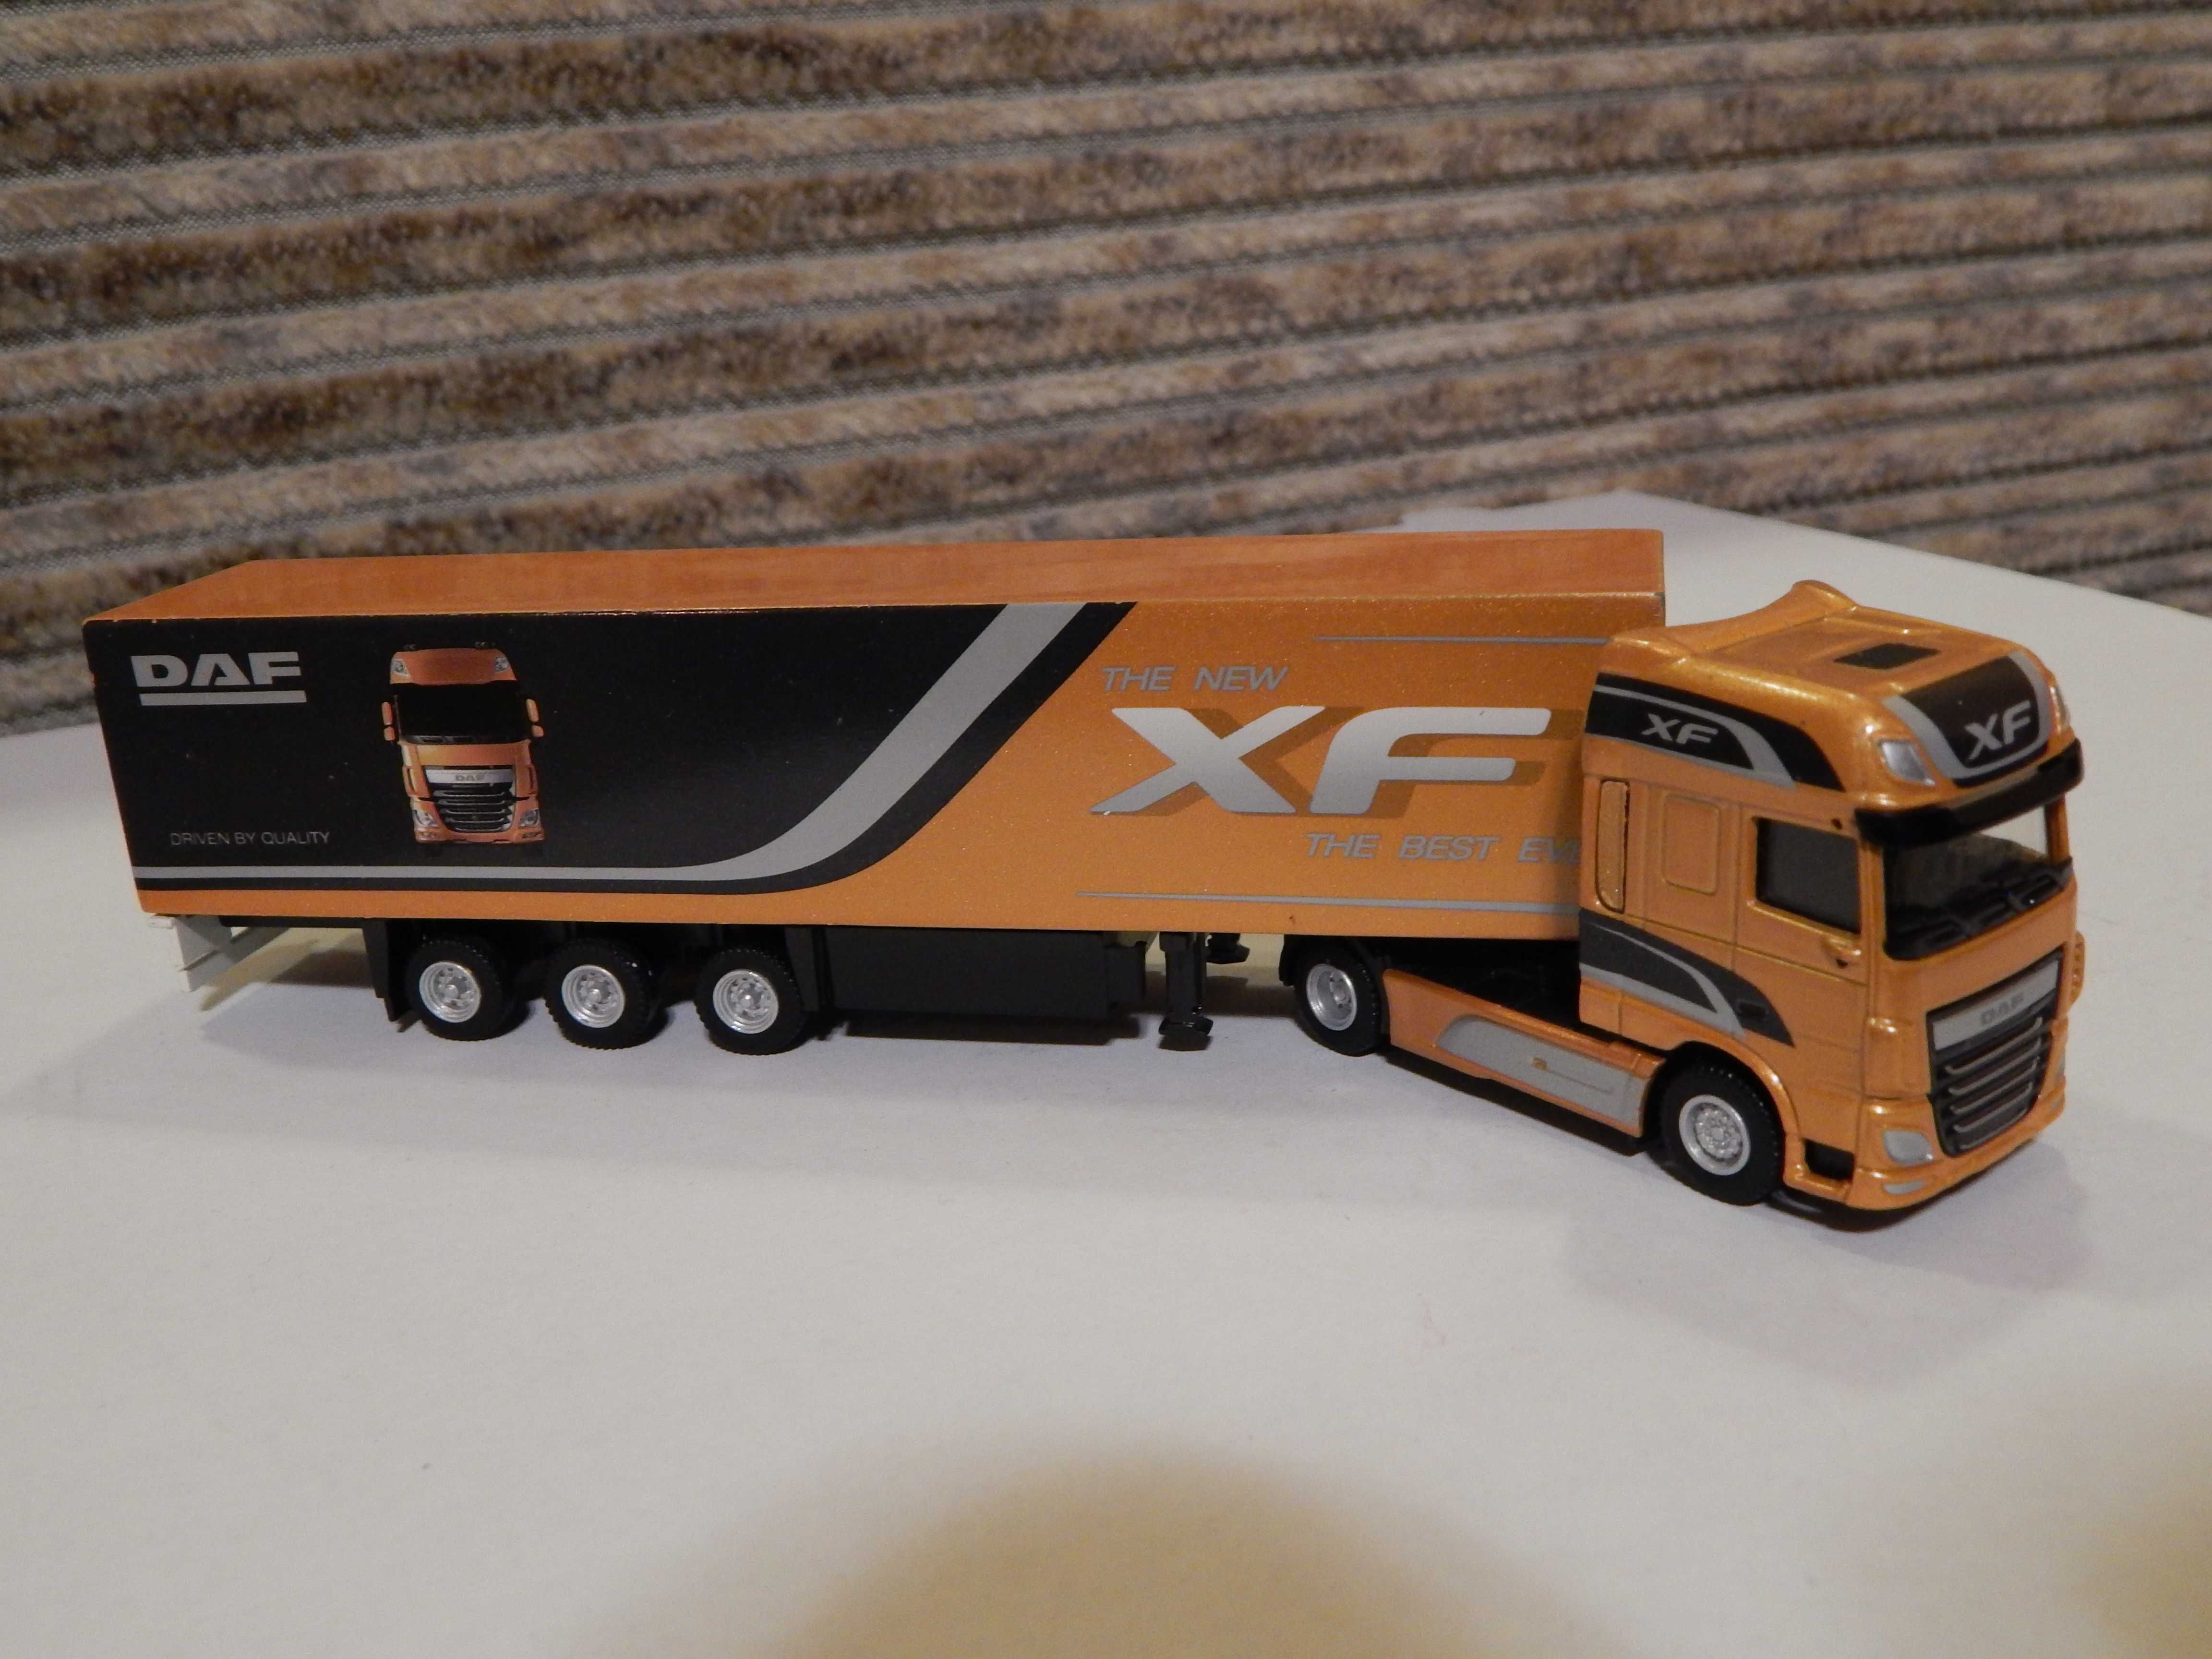 Modelik kolekcjonerski DAF XF z naczepą w skali 1:87